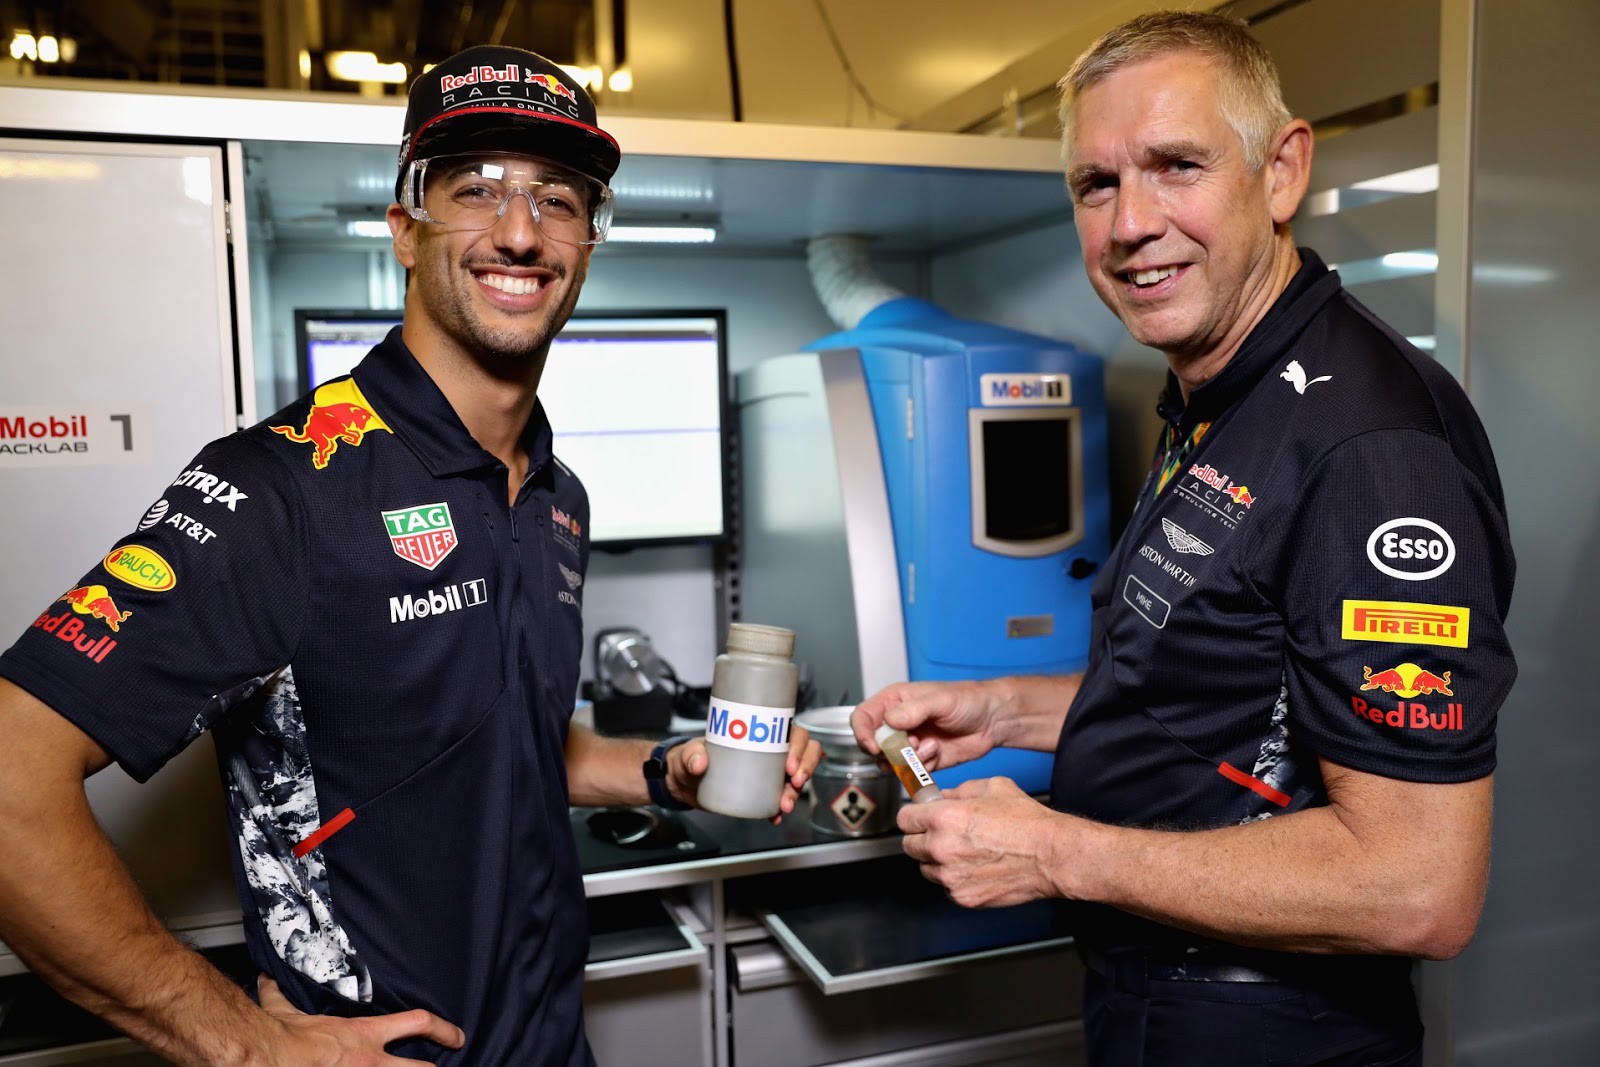 Red Bull làm nên bất ngờ ở Belgian GP nhờ nhiên liệu thần thánh giúp xe đua chạy nhanh hơn? - Ảnh 4.